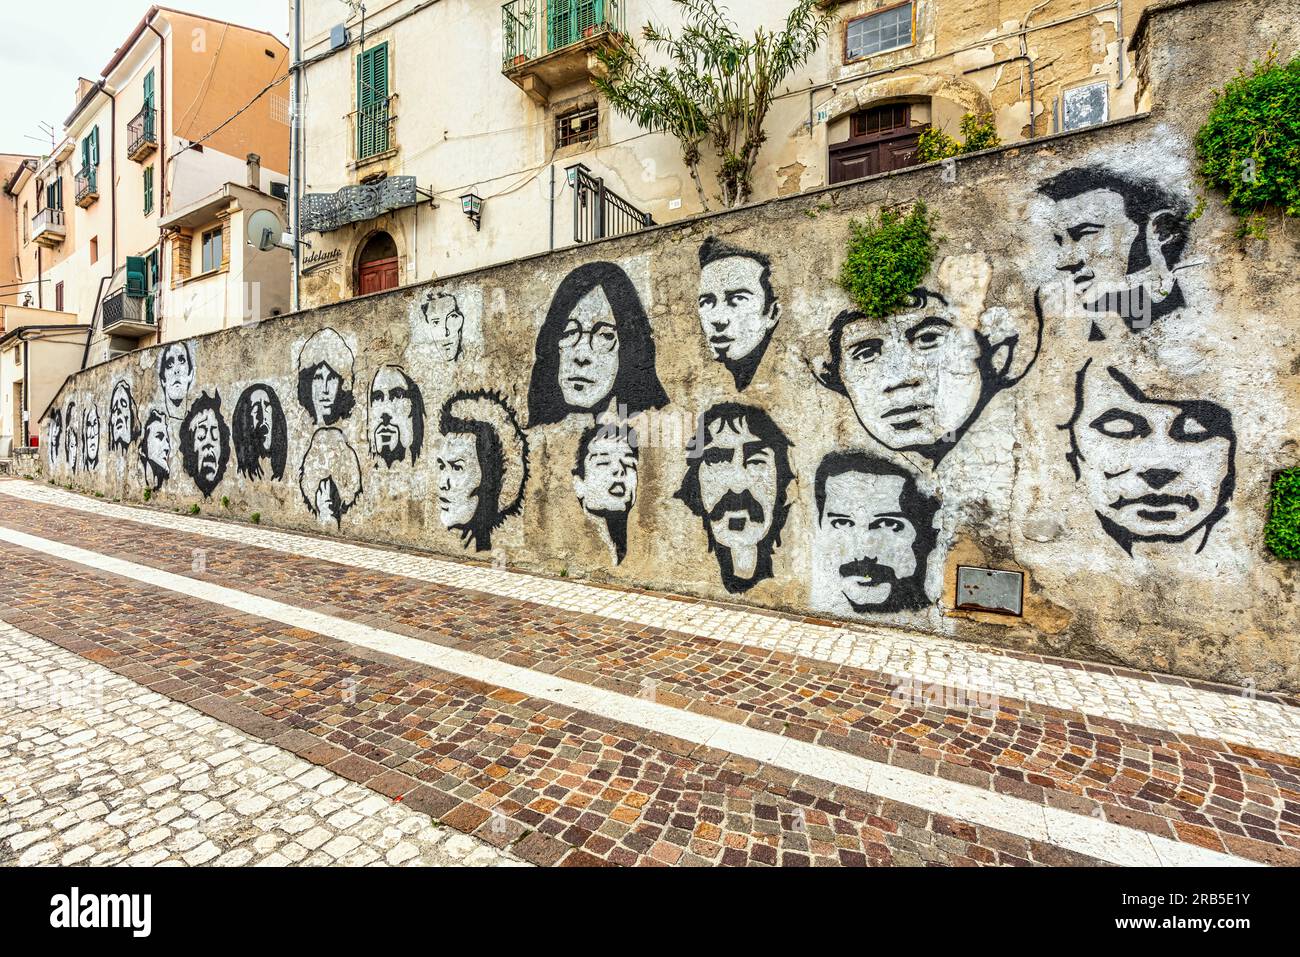 Peintures murales de personnes célèbres, stars de rock mortes, dans le centre historique de la ville de Tocco da Casauria. Tocco da Casauria, province de Pescara, Abruzzes, Italie Banque D'Images